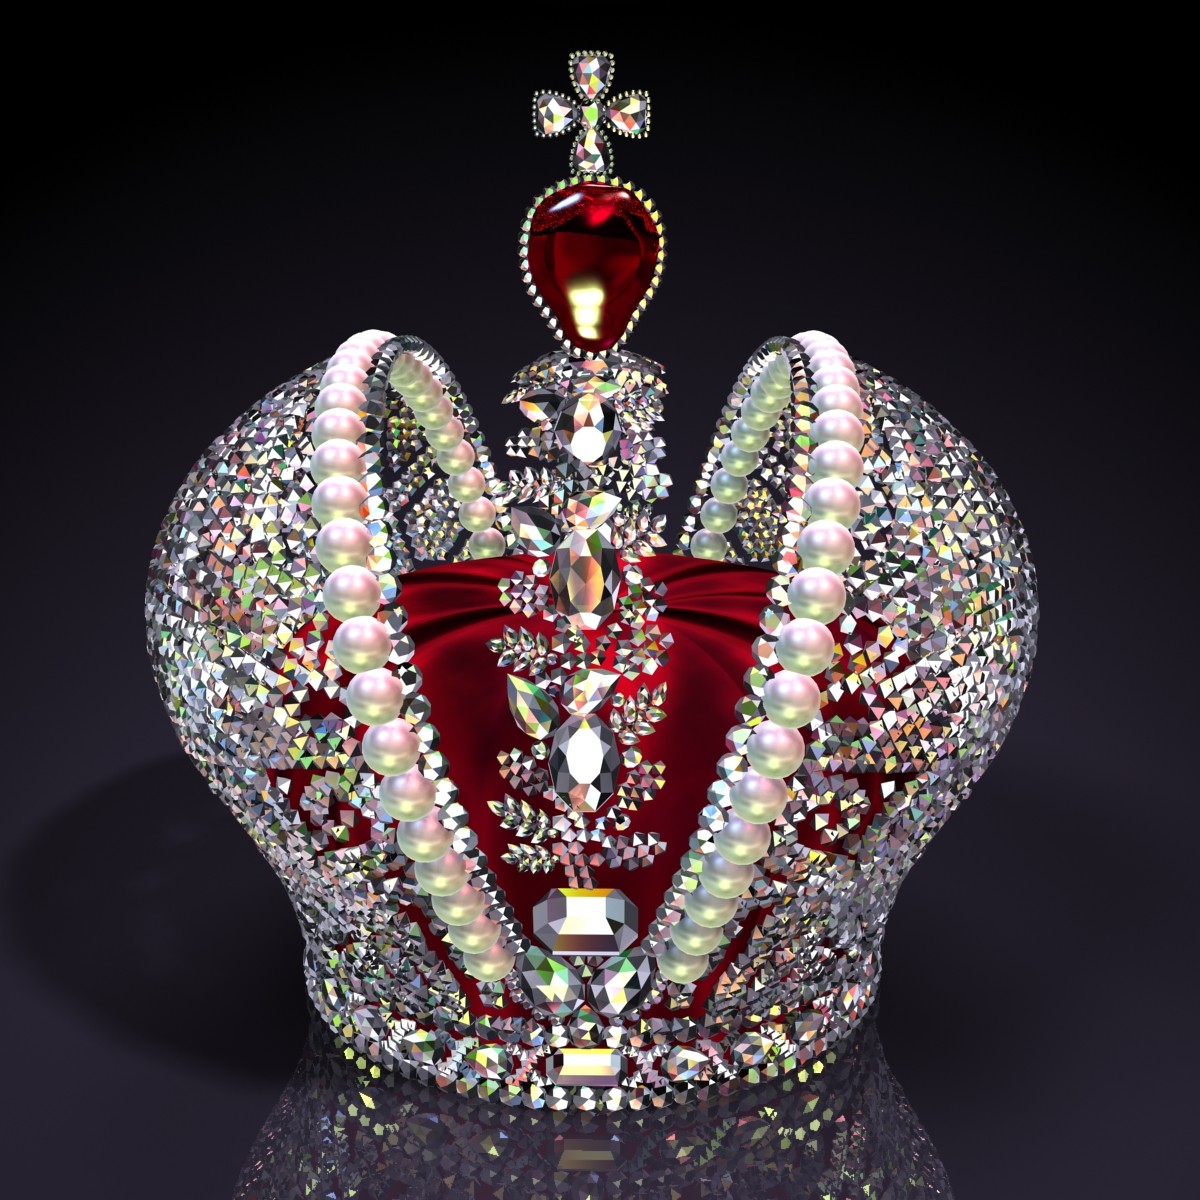 葉卡特琳娜大帝的皇冠，上面鑲嵌著一顆紅寶石